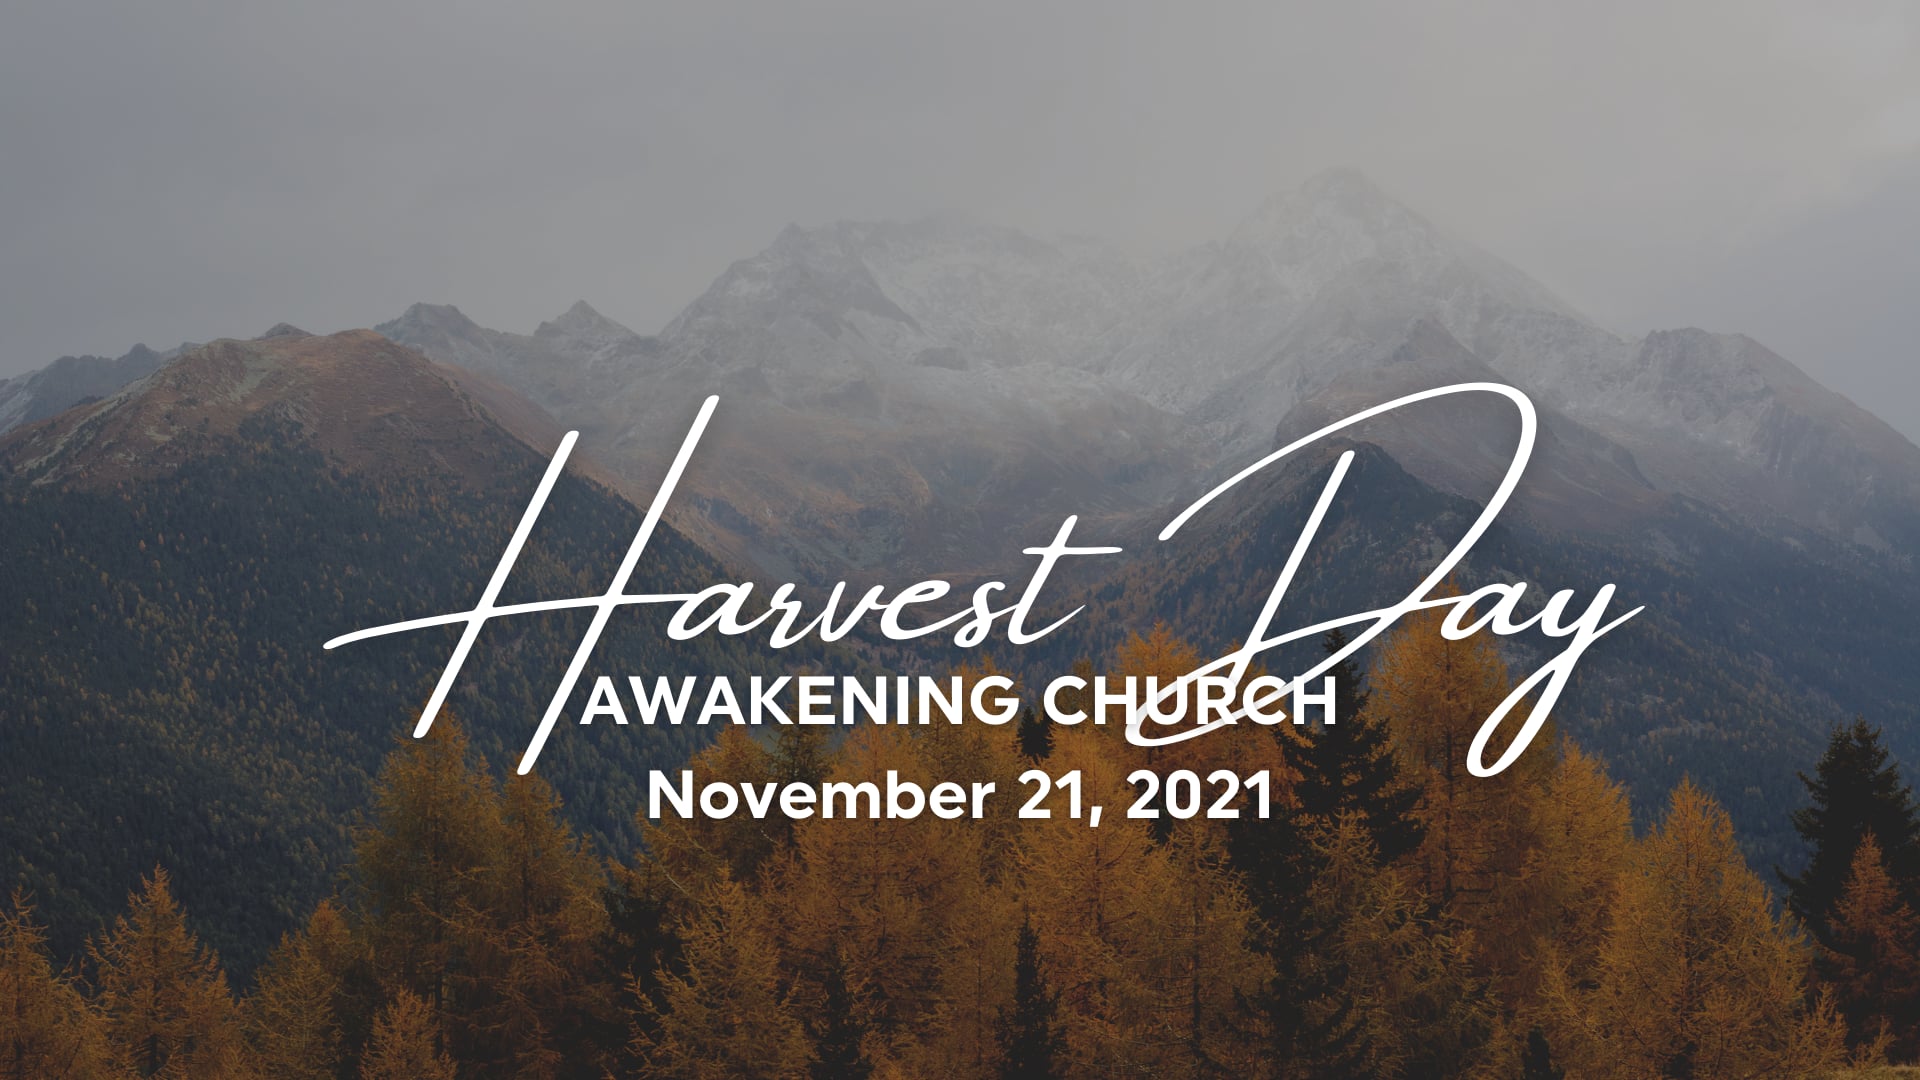 Harvest Day - November 21, 2021